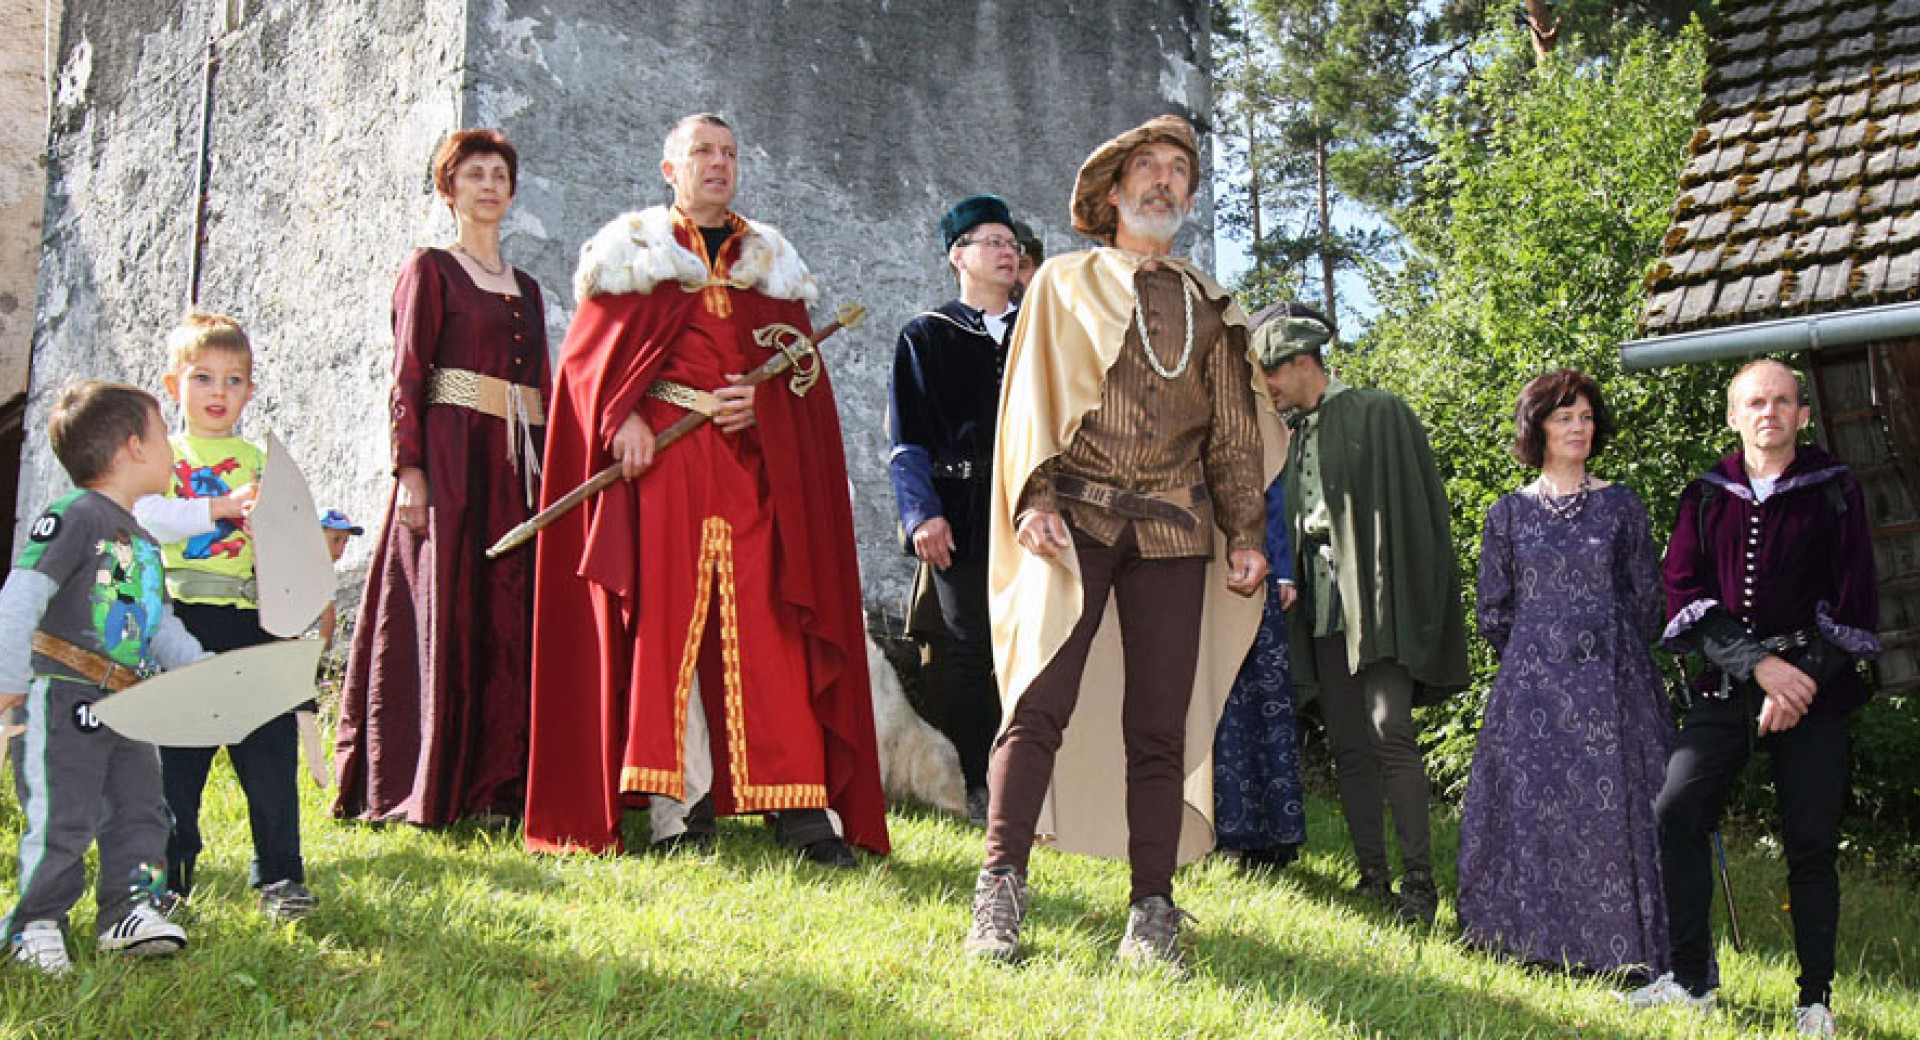 Utrinek s Pohoda po poteh roparskih vitezov v krajinskem parku Polhograjski dolomiti; na fotografiji ljudje, oblečeni v grajska oblačila